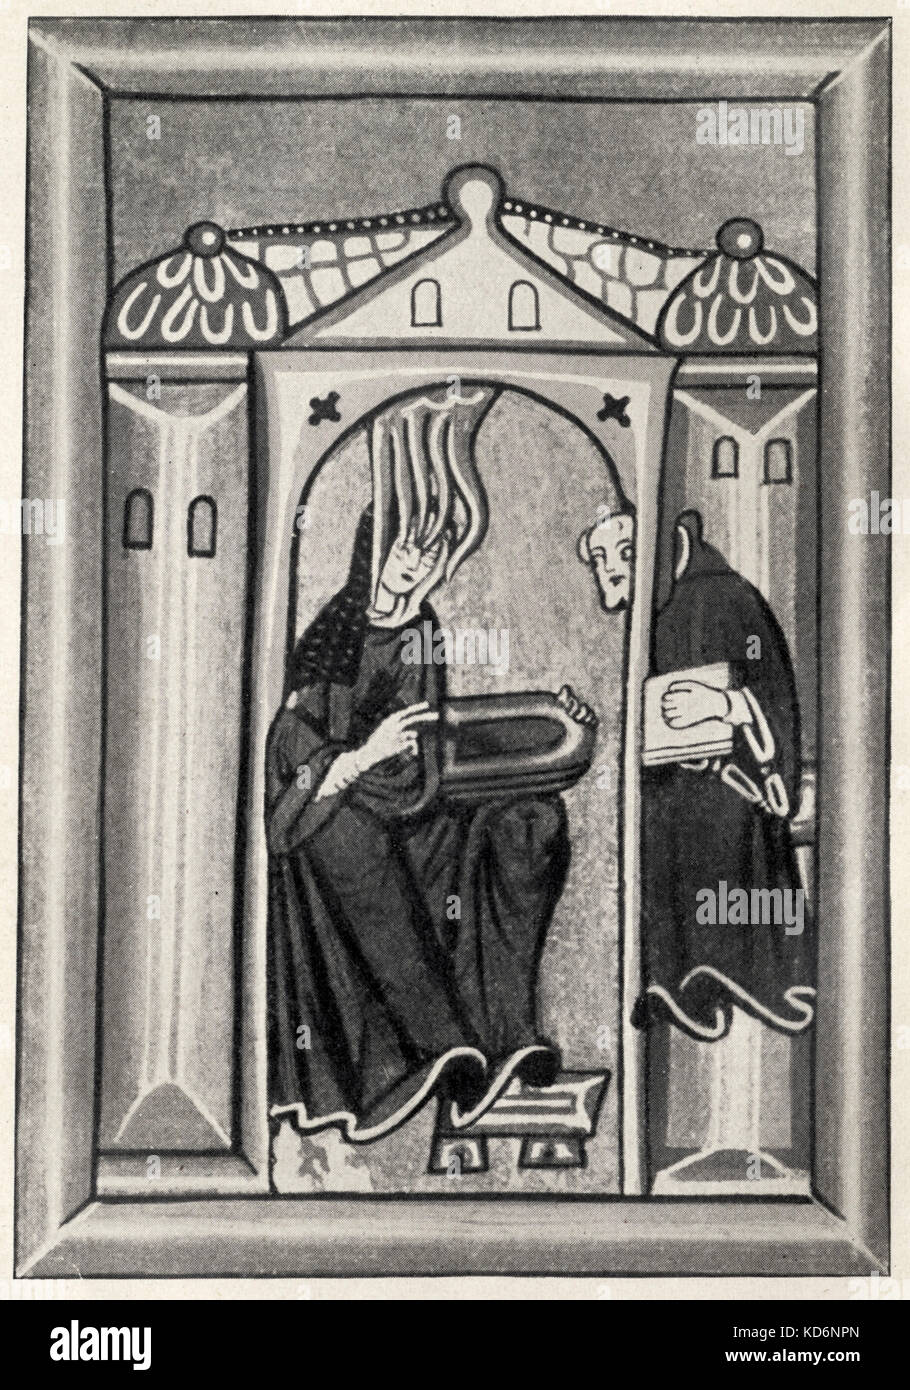 HILDEGARD von Bingen, Heilige. Ihr Komponieren ist durch den Heiligen Geist inspiriert, um ihren Kopf. Abbildung aus dem Codex in Wiesbaden Deutsche Äbtissin und Musiker (1098-1179) schrieb Sie monophone Musik für die Kirche, zeigt einige Abweichungen von traditionellen plainsong Stil. Stockfoto